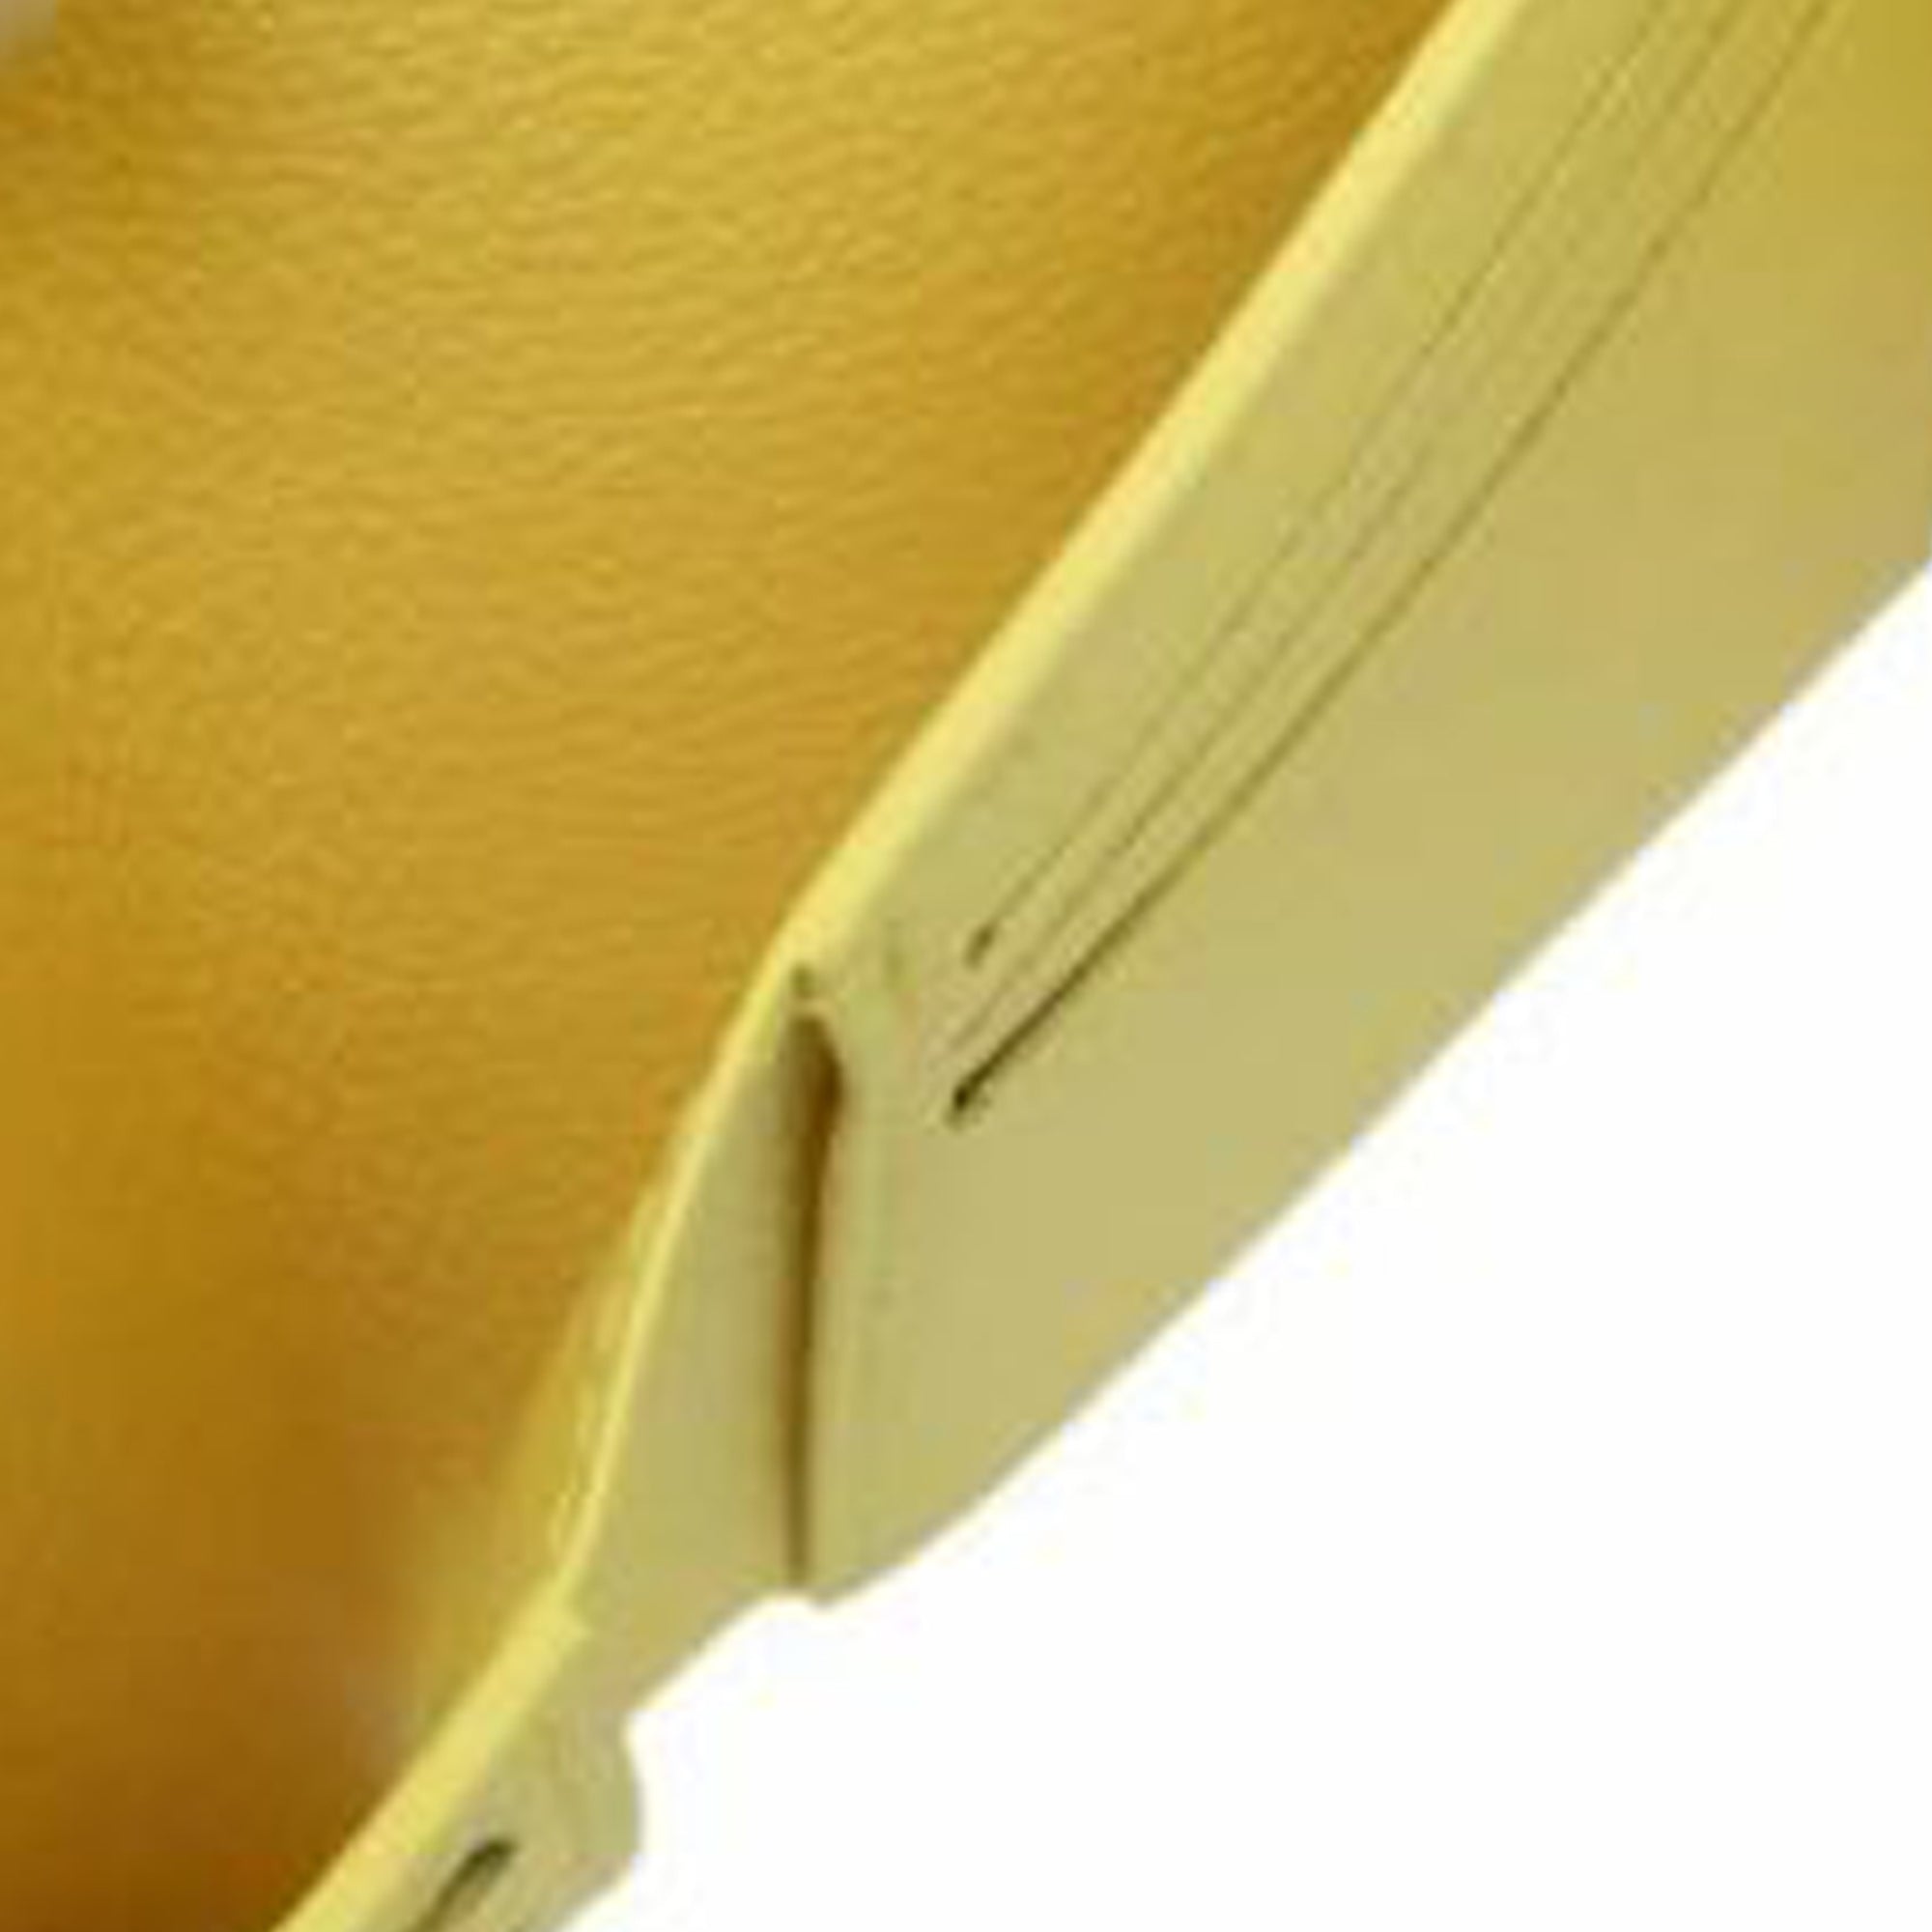 Louis Vuitton Empreinte Victorine yellow wallet